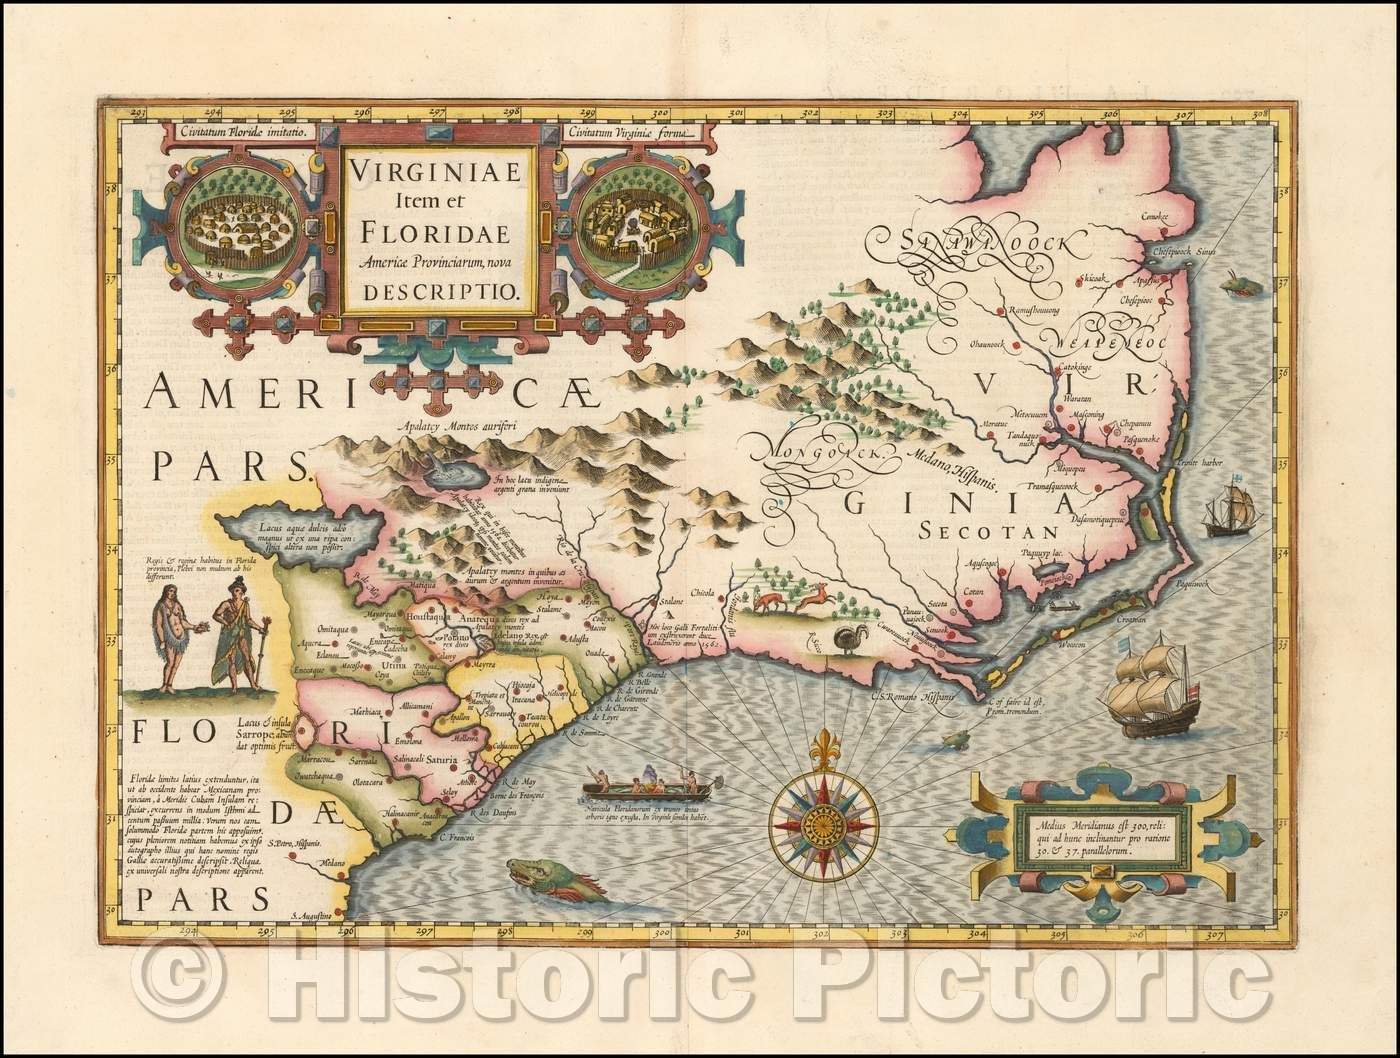 Historic Map - Virginiae Item et Floridae Americae Provinciarum, 1610, Jodocus Hondius v2